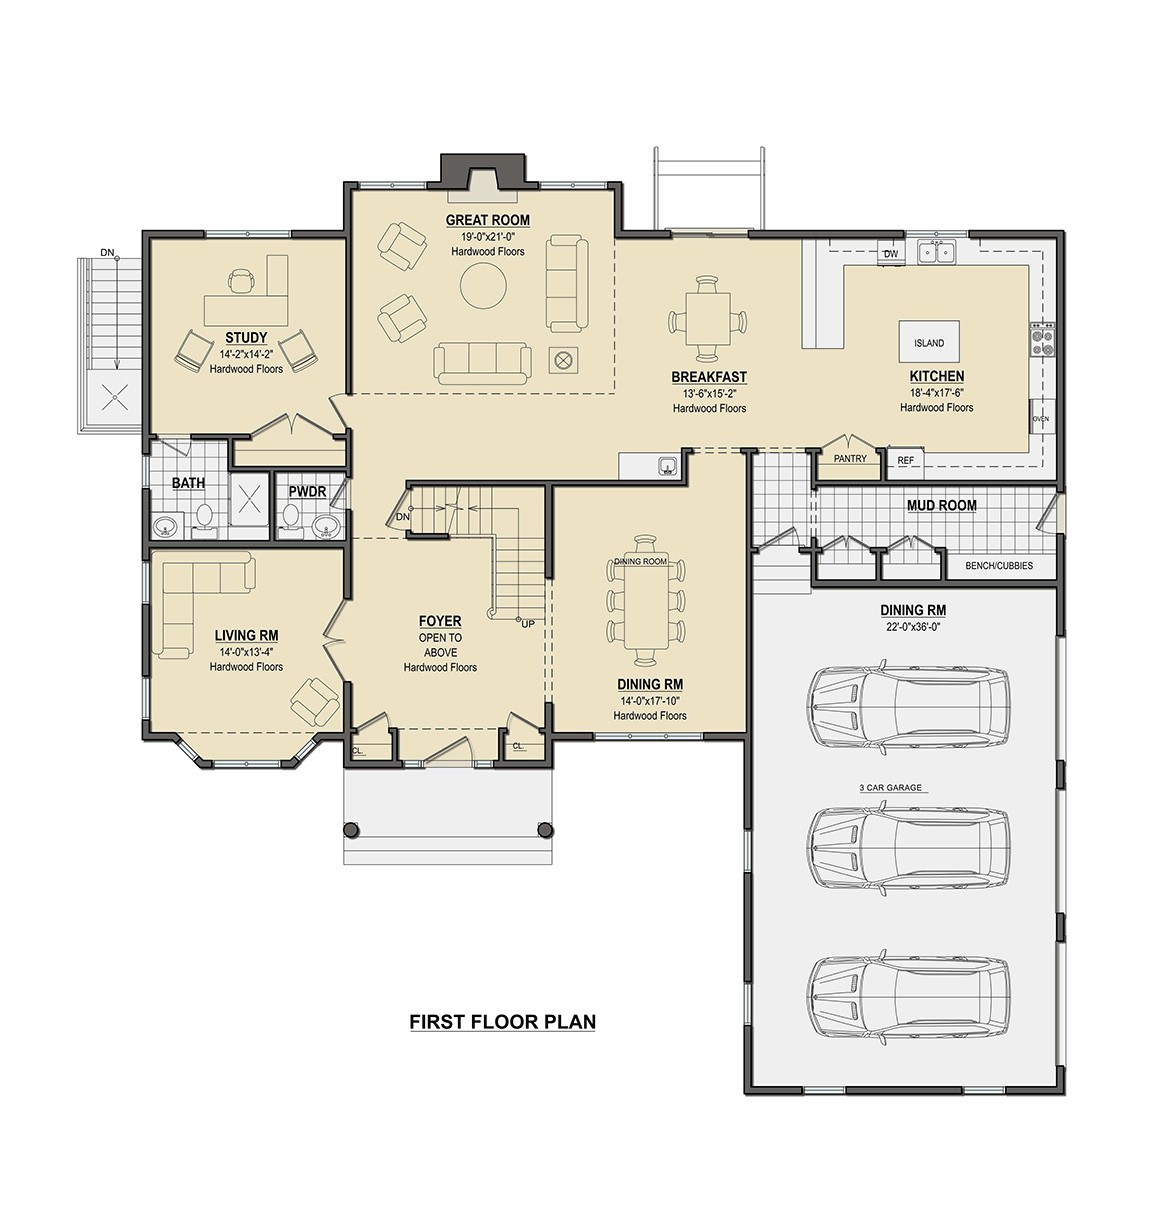 Barlow Homes Floor Plans Floorplan Barlow